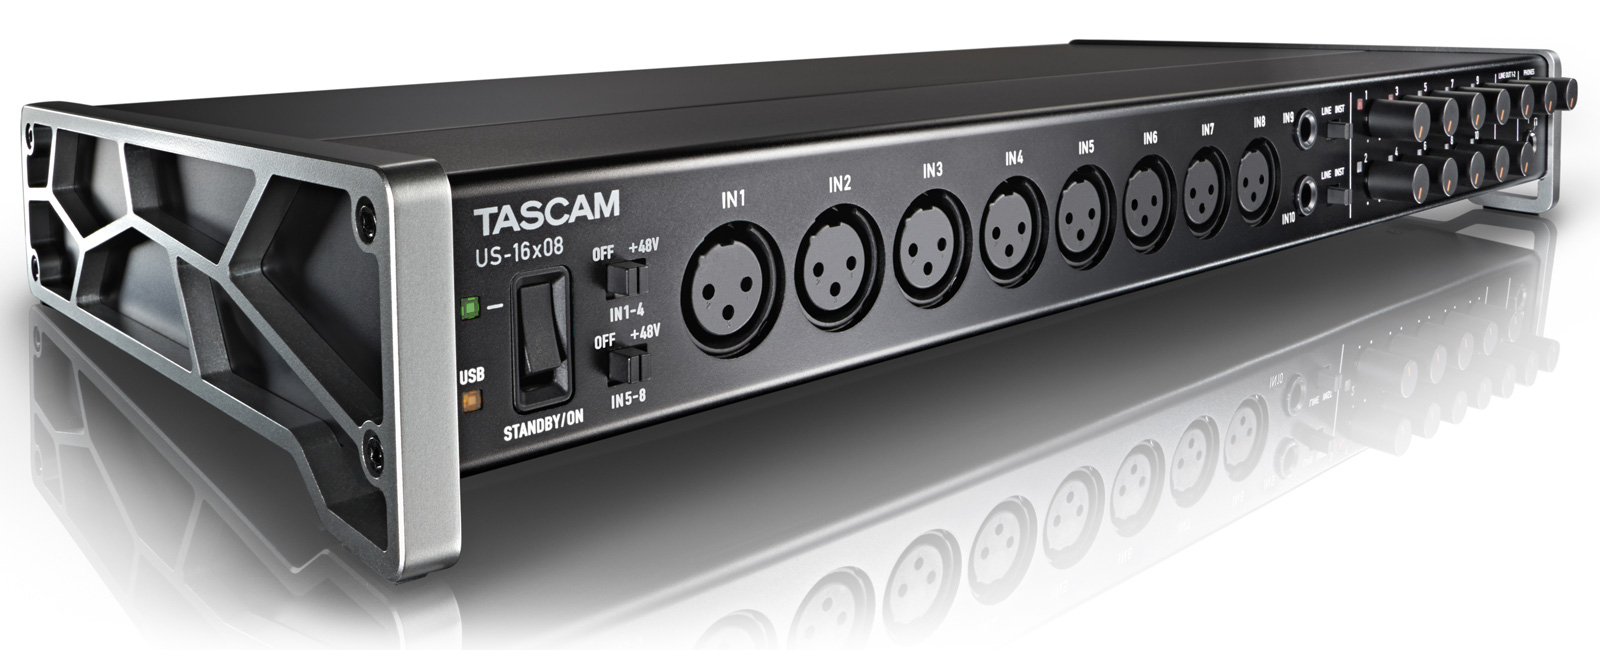 16入力とDSP搭載で約42,000円のTASCAM USBオーディオ「US-16x08」を試す